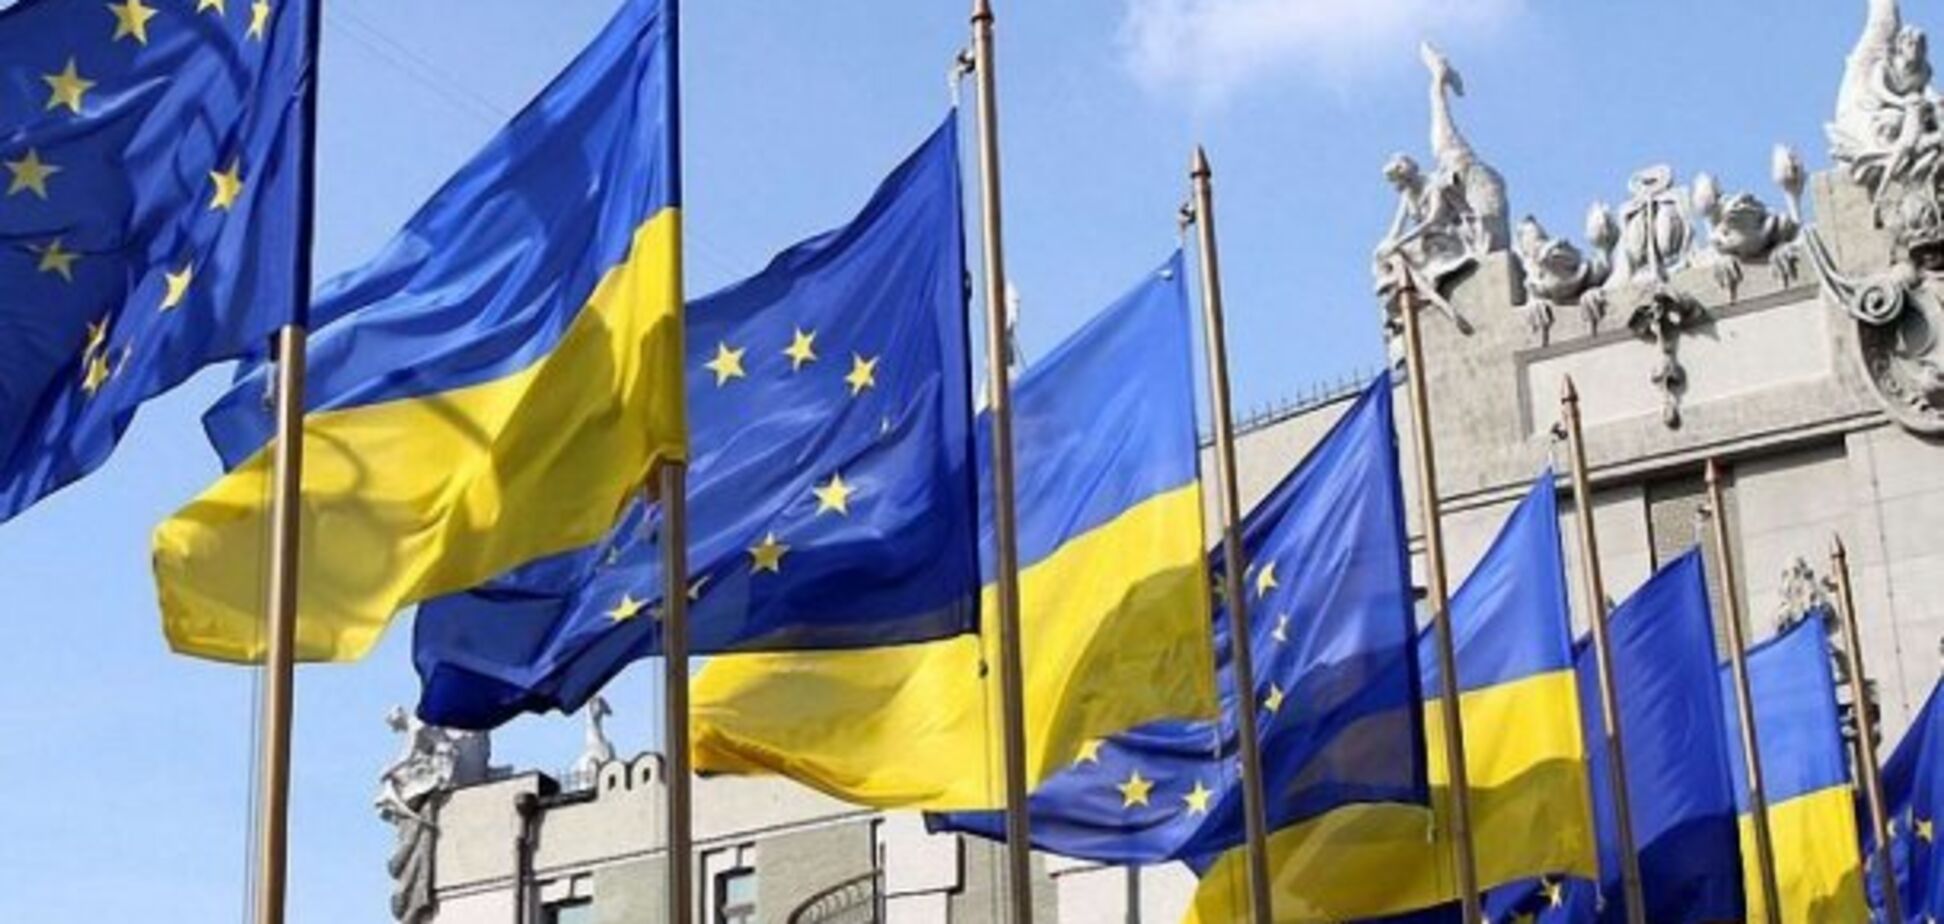 Путіне, виведи війська: ЄС виступив із важливою заявою щодо Донбасу